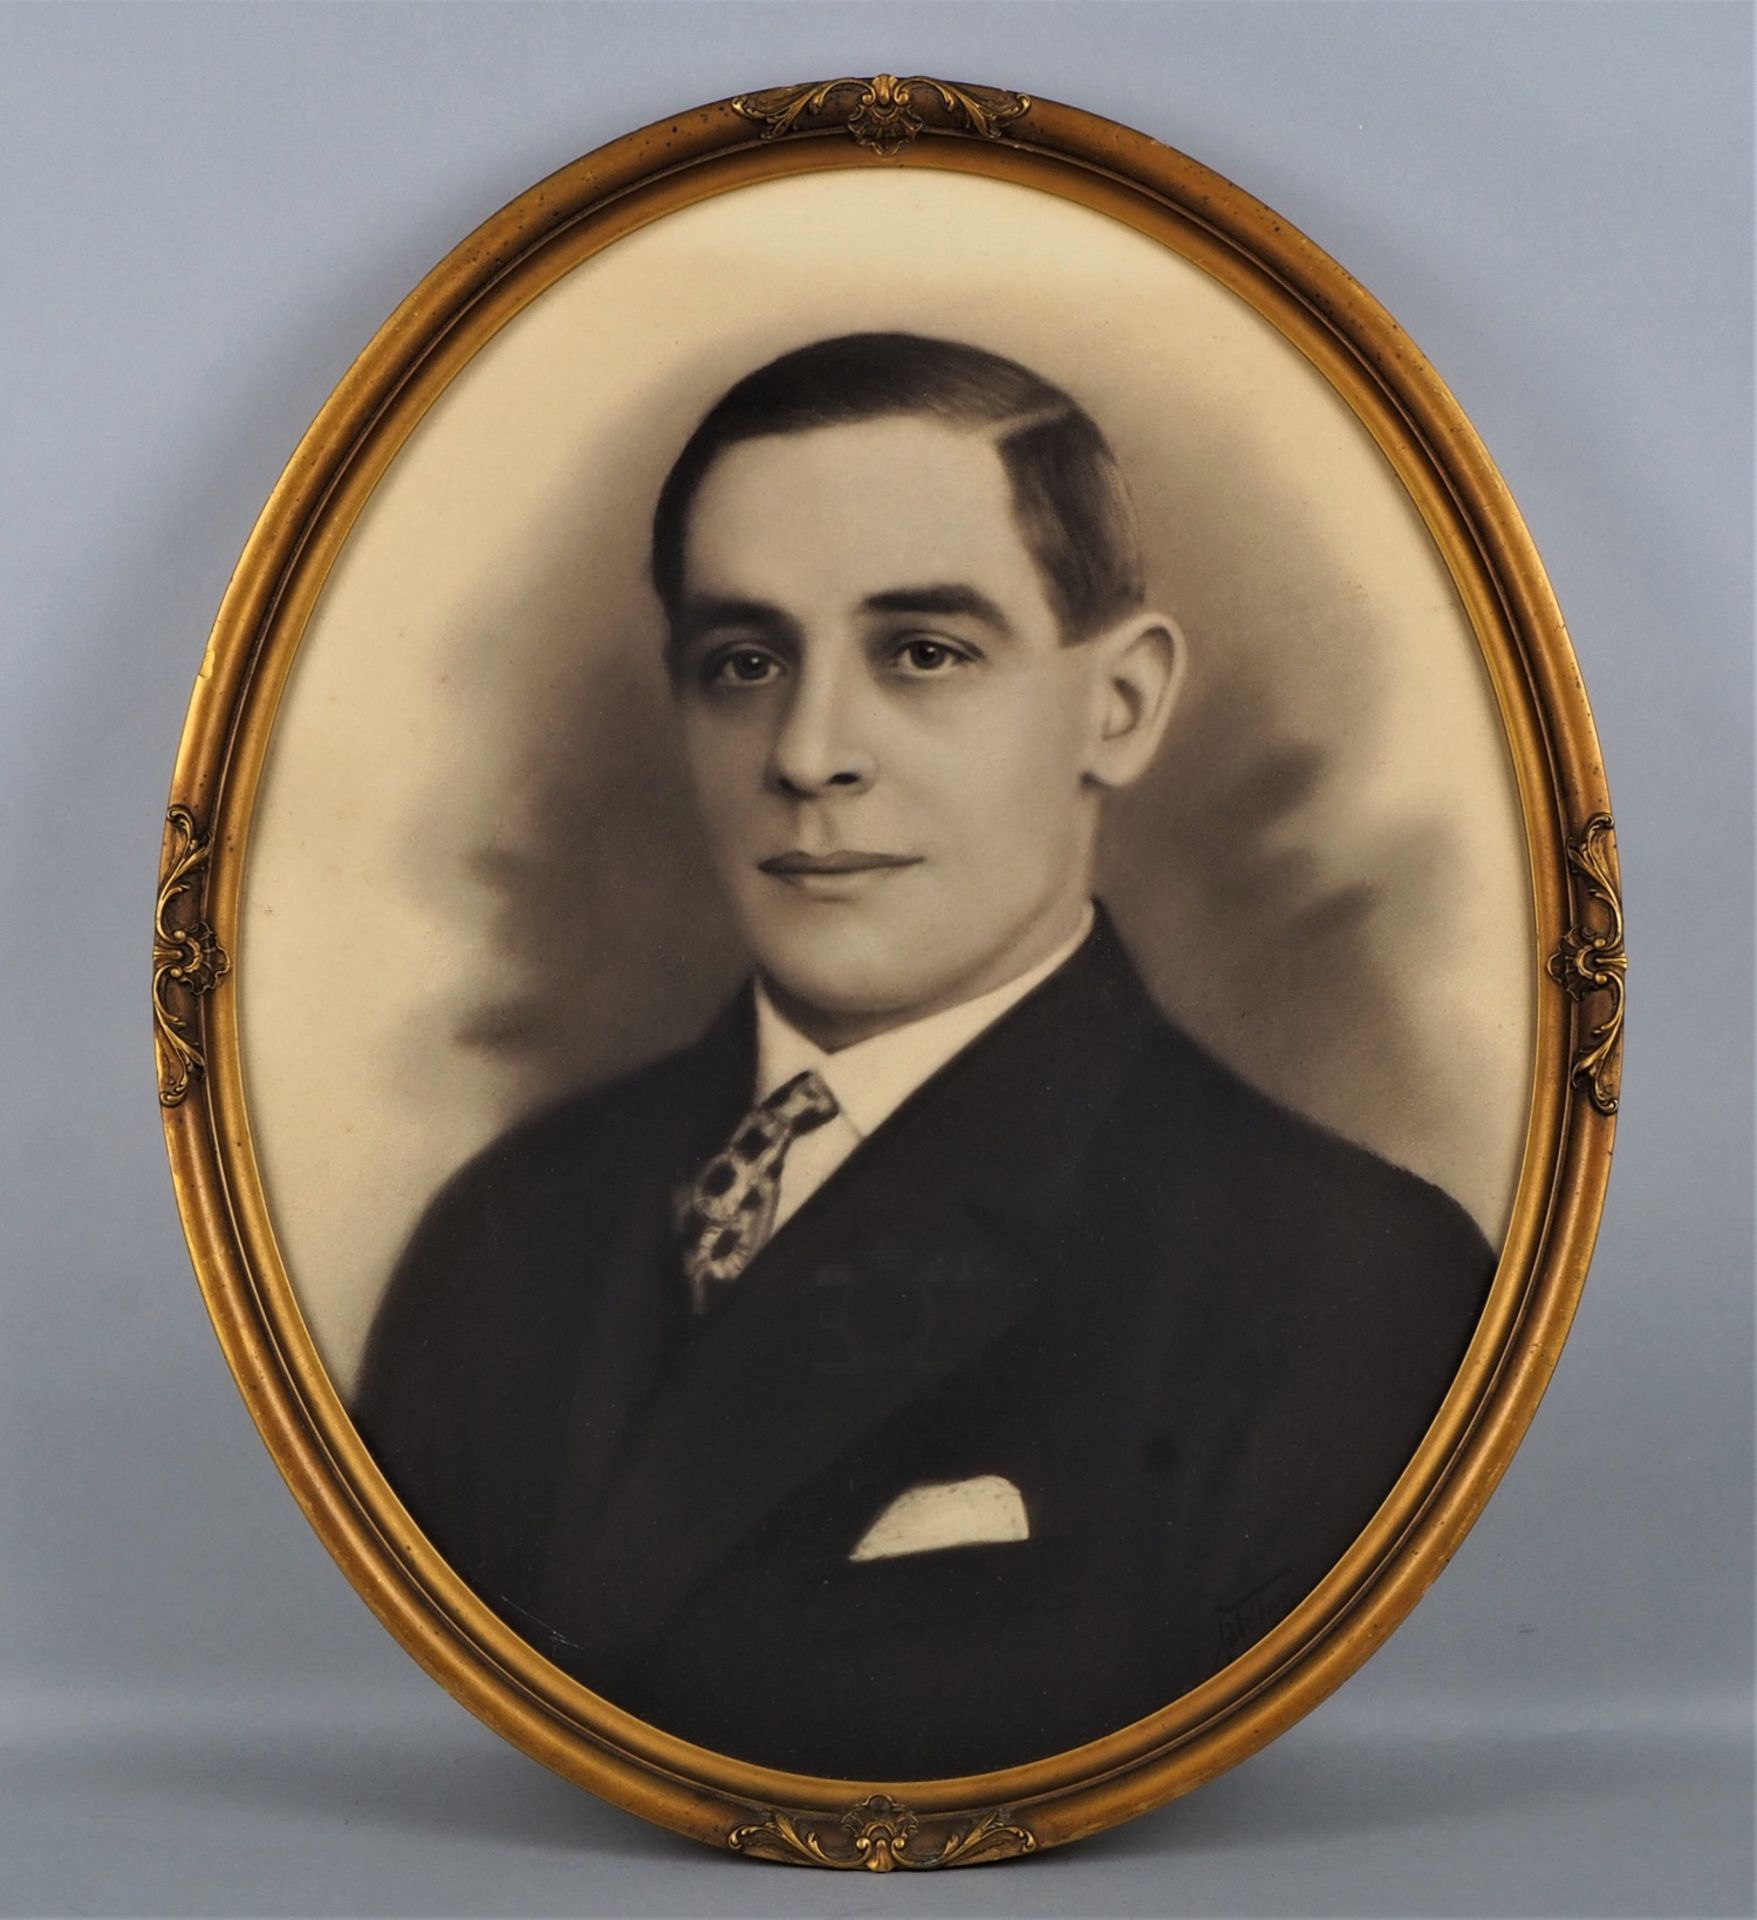 Portrait of a gentleman around 1900